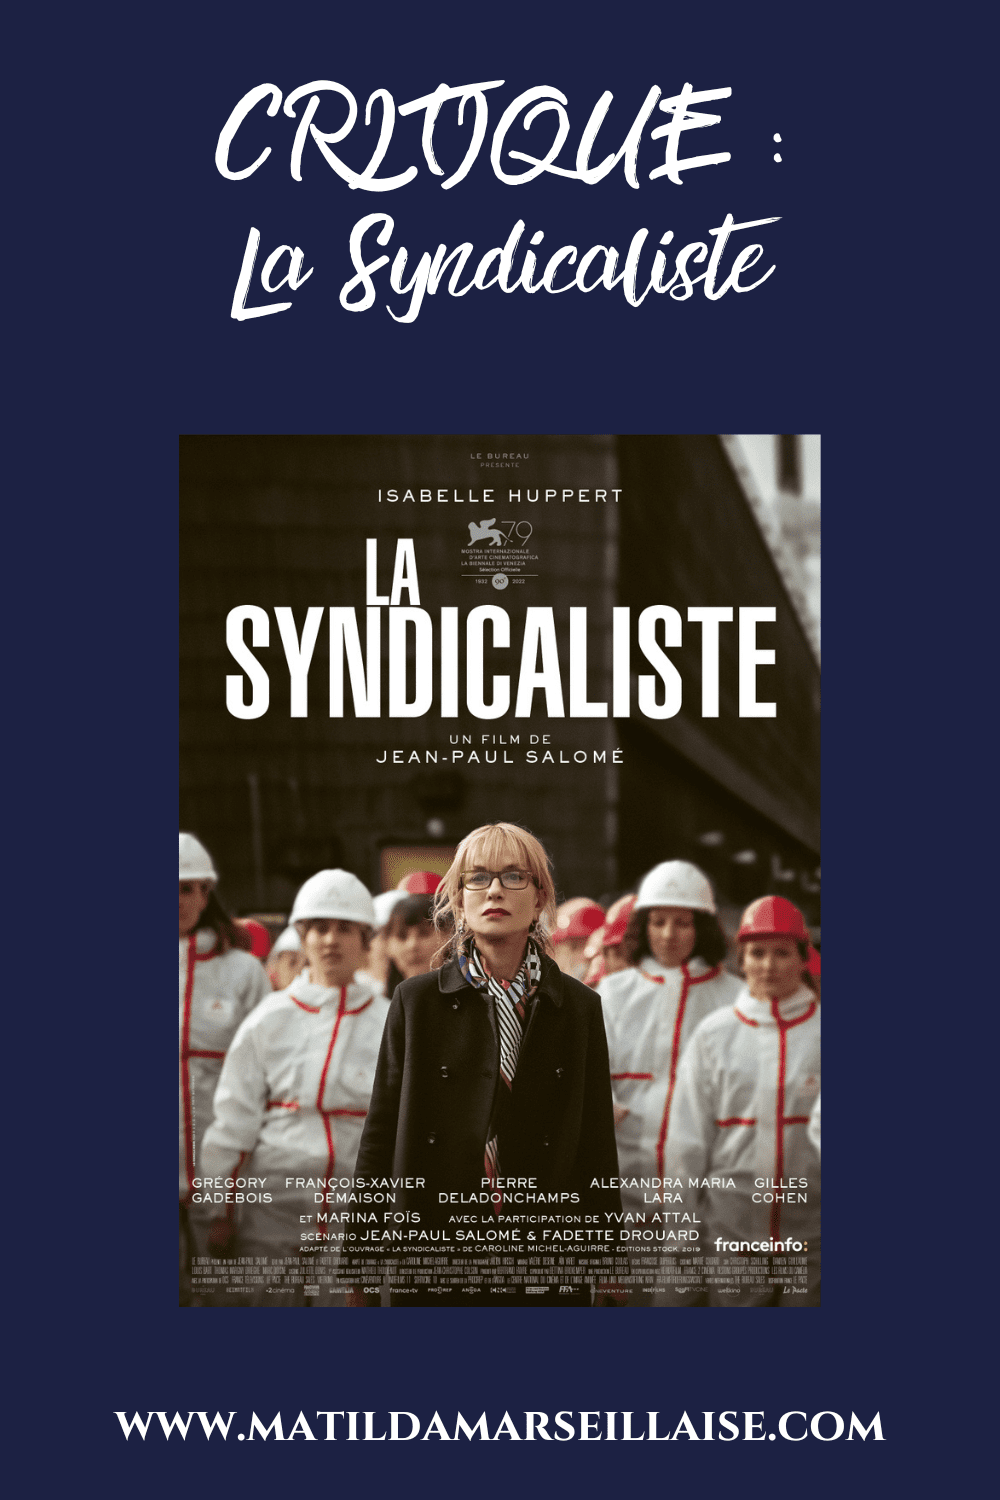 Dans La Syndicaliste, Isabelle Huppert incarne une représentante syndicale qui doit faire face aux retombées d’une tentative de dénonciation d’affaires douteuses